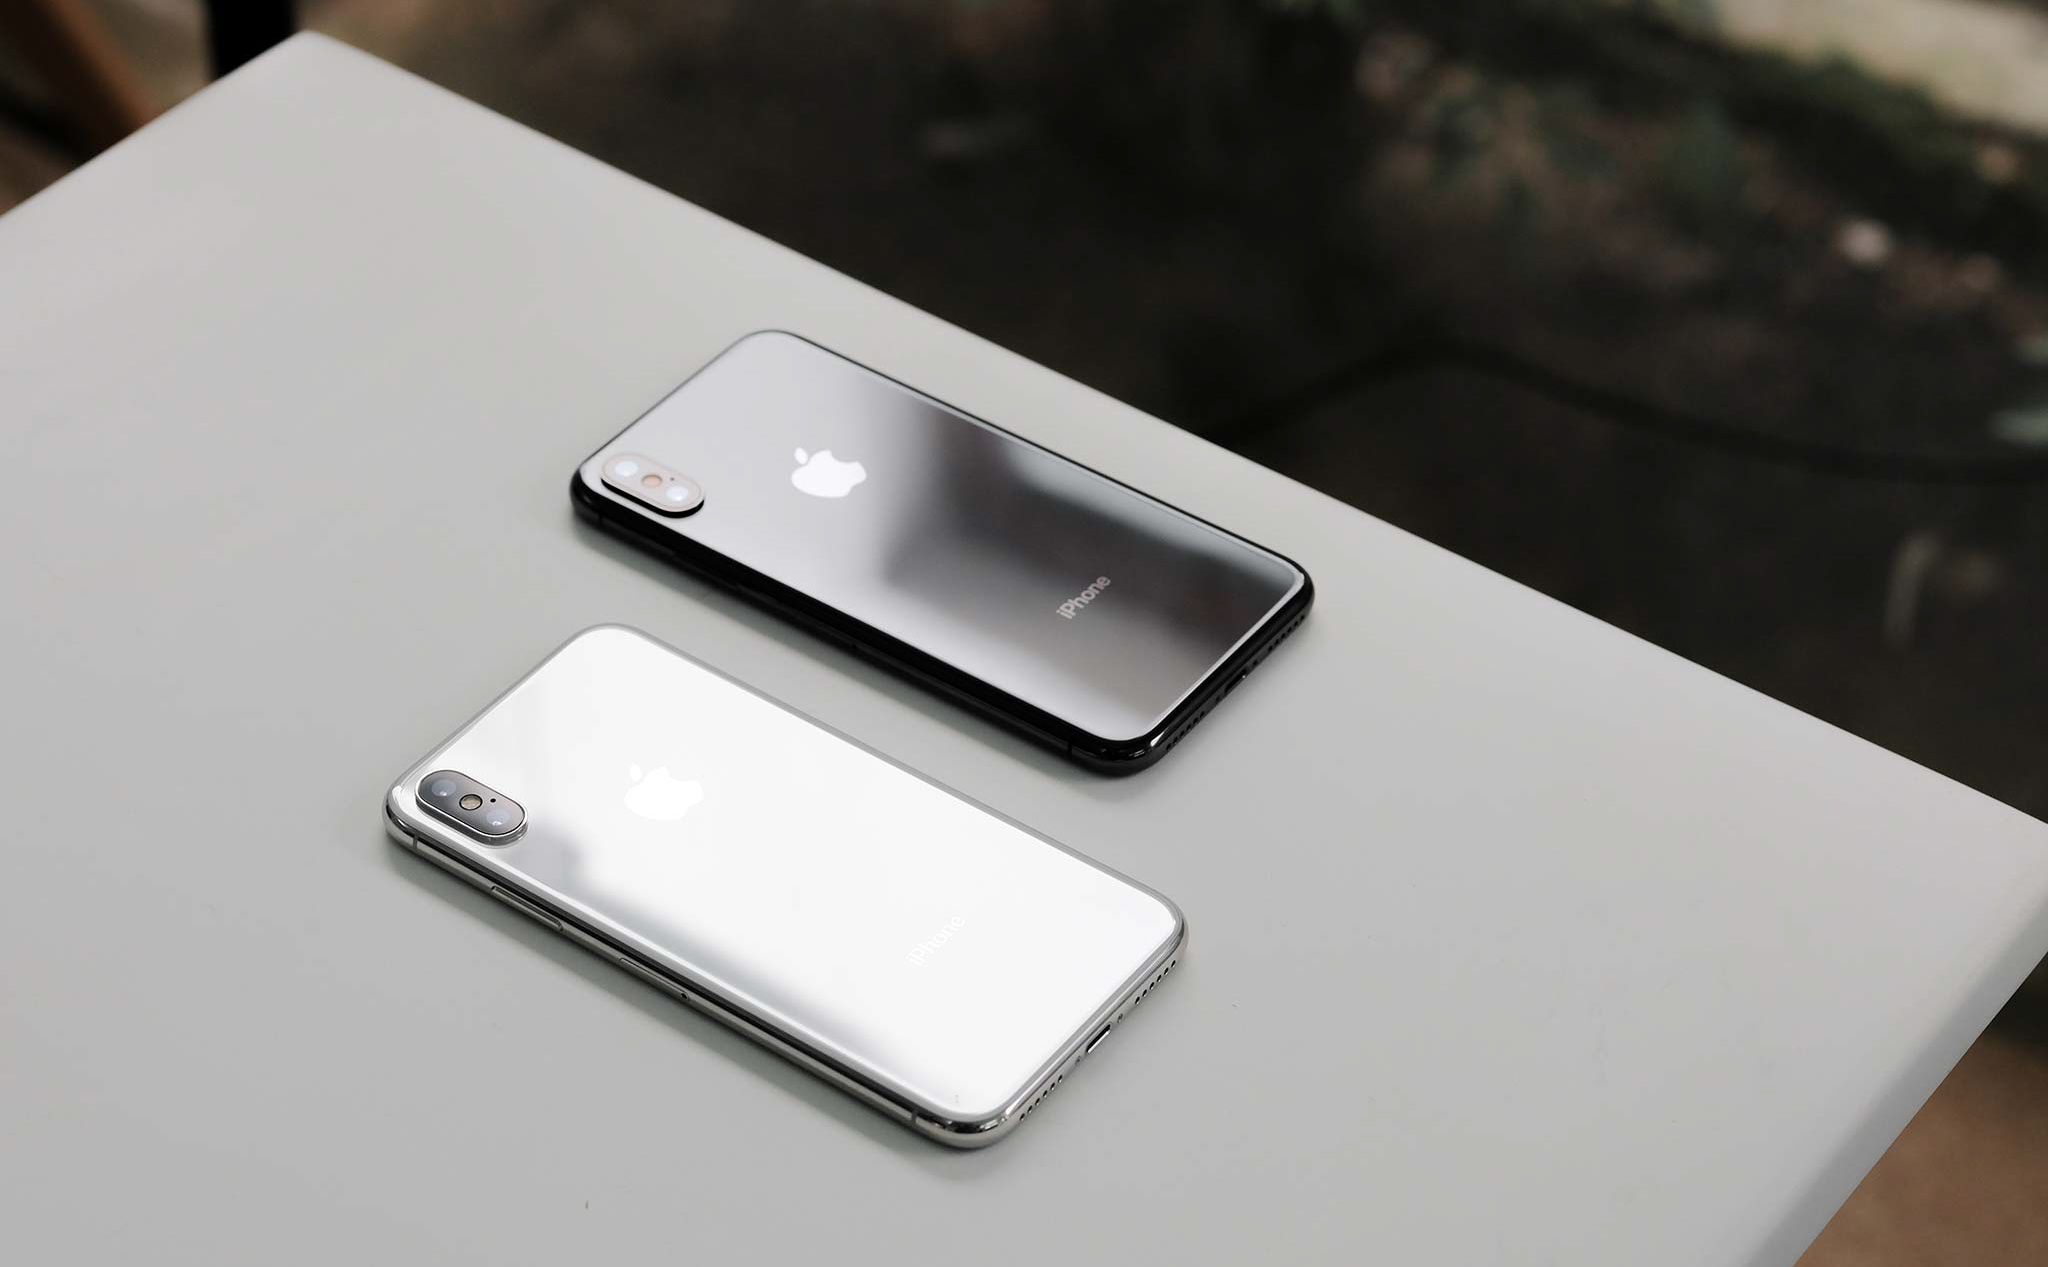 Doanh số iPhone trong Quý 2 dự kiến khoảng 43 triệu máy, sẽ tiếp tục bán chạy đến hết năm 2018